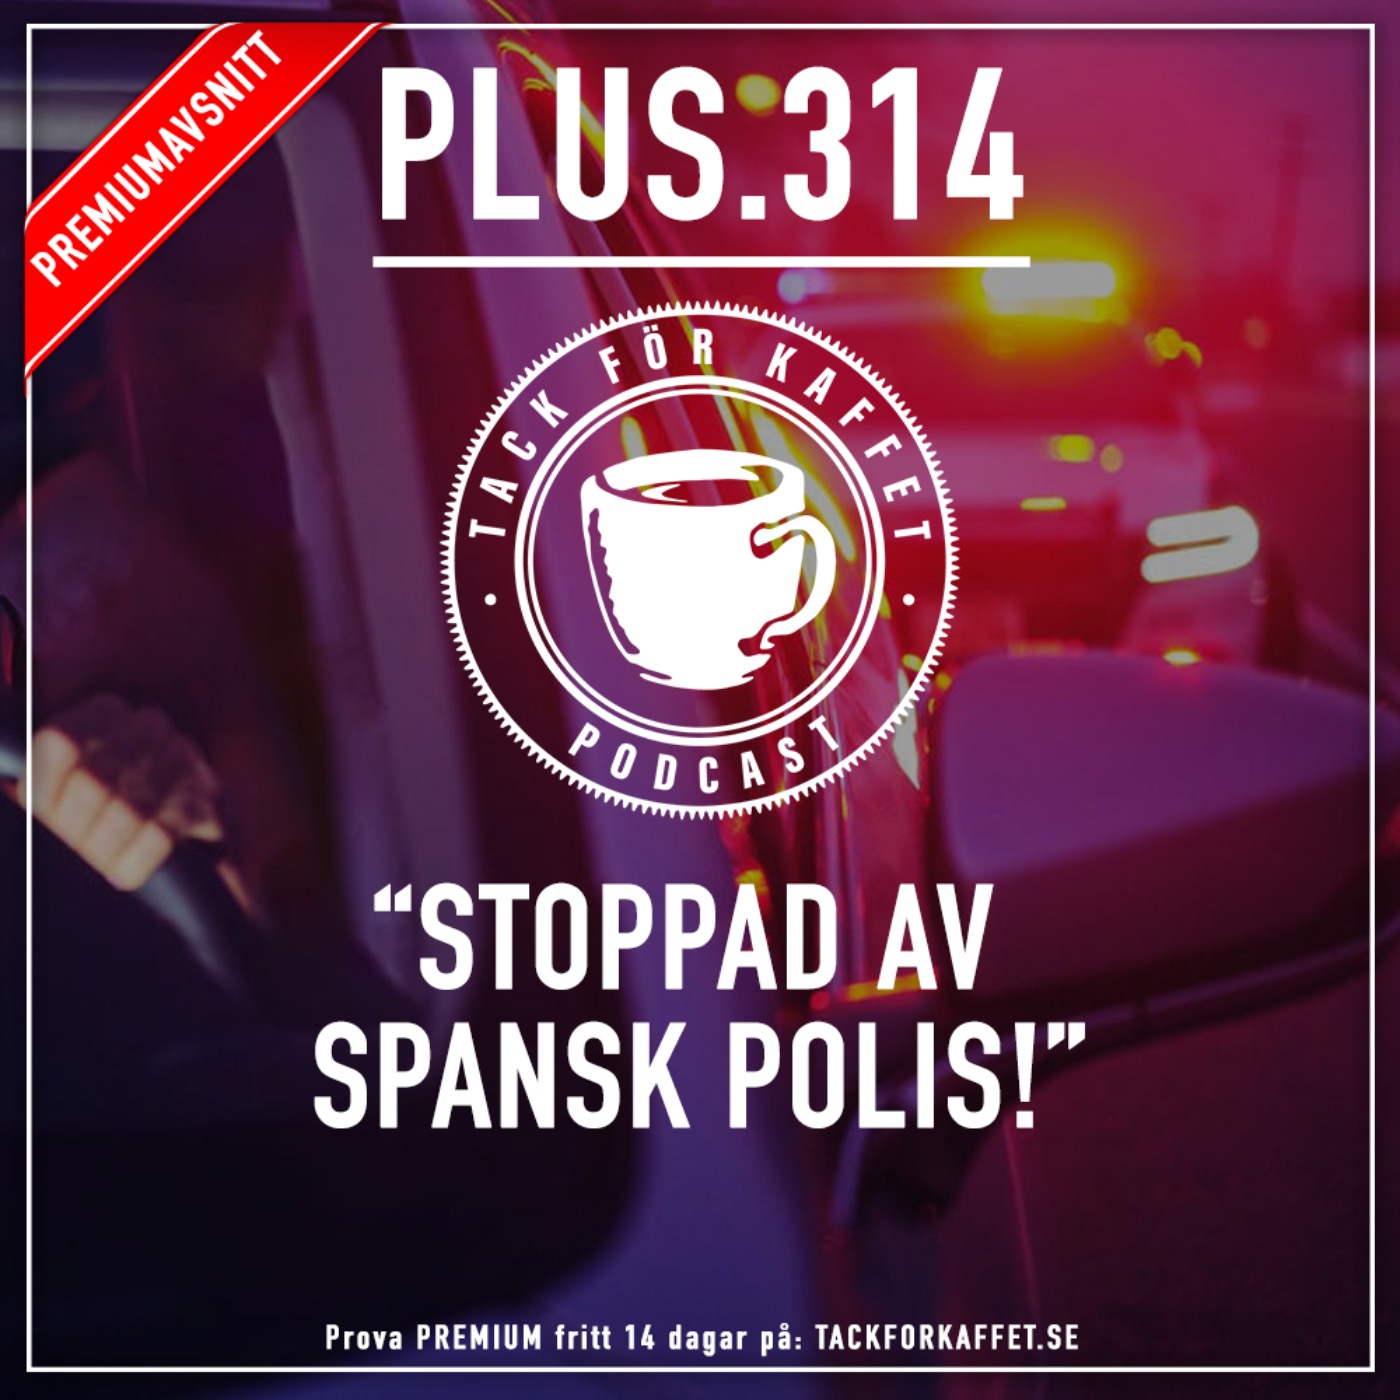 Plus.314 - Stoppad av spansk polis.